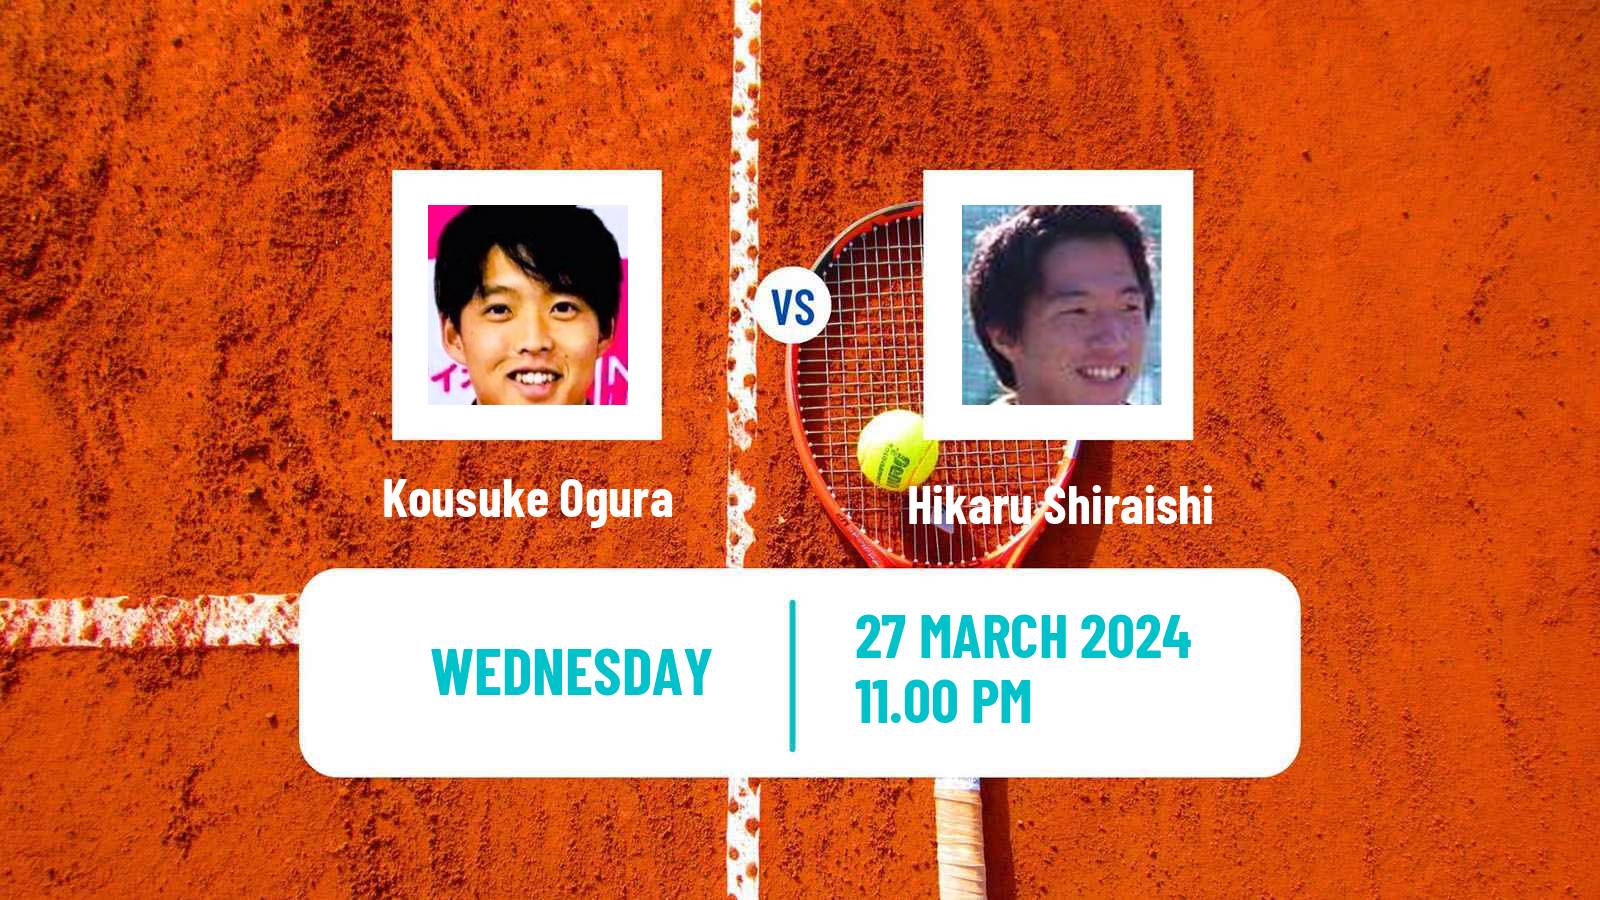 Tennis ITF M15 Tsukuba Men Kousuke Ogura - Hikaru Shiraishi